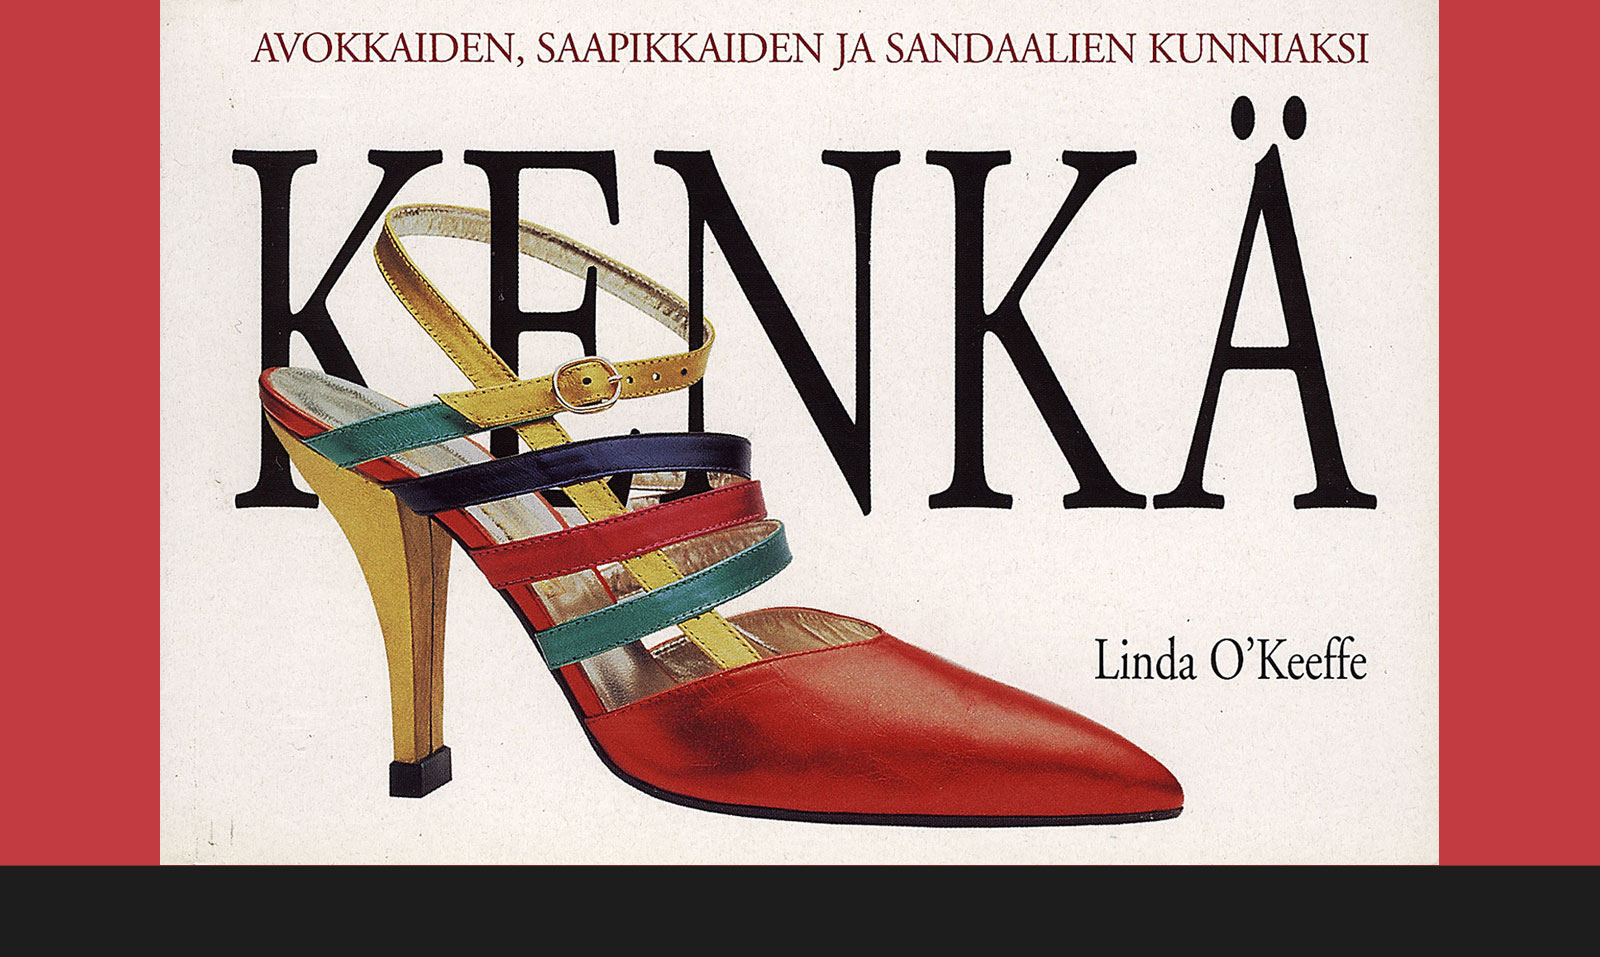 Shoes - Linda O'Keeffe